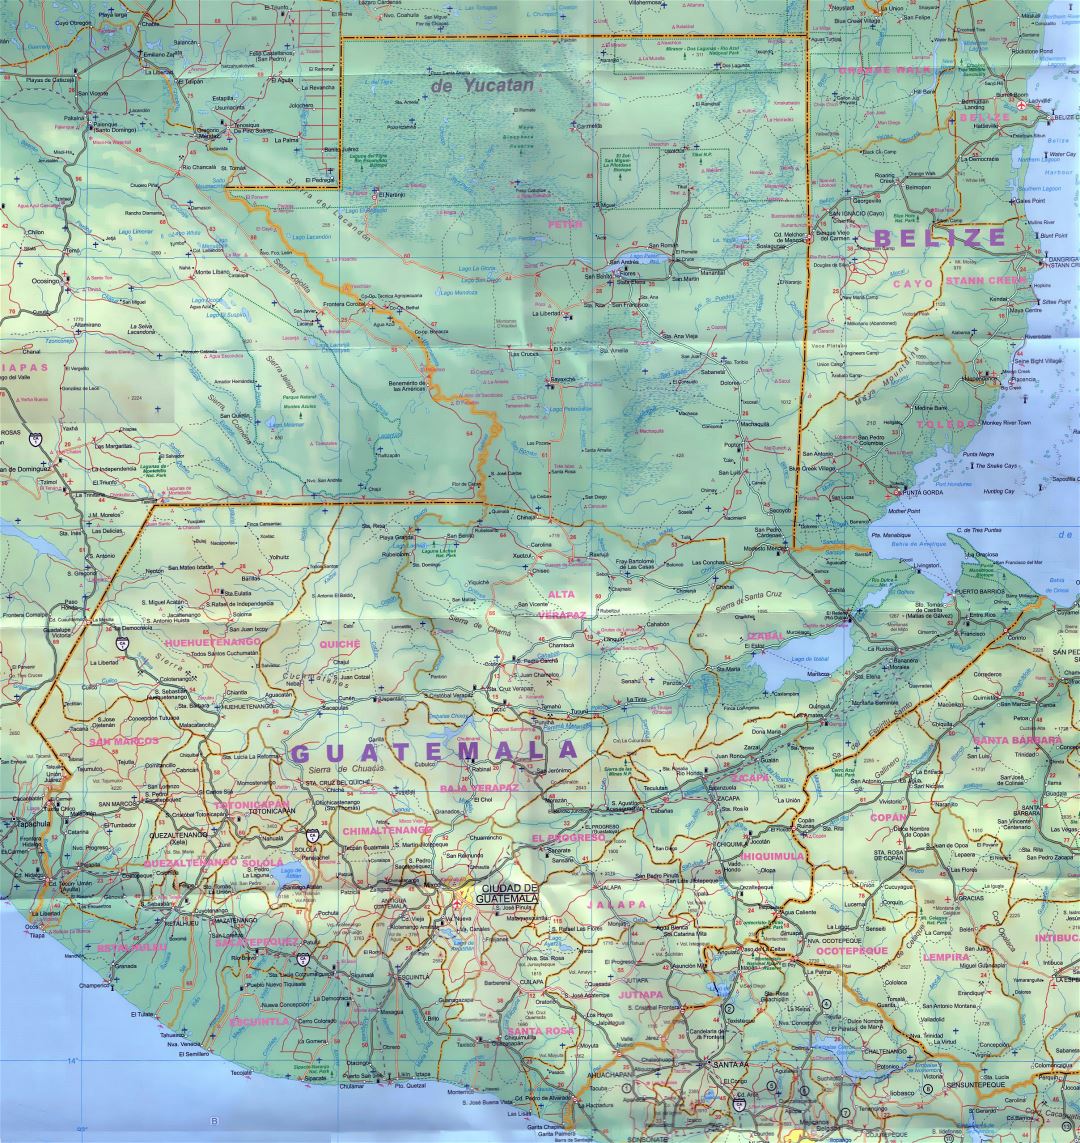 Большая детальная карта Гватемалы с дорогами, городами, аэропортами и другими пометками